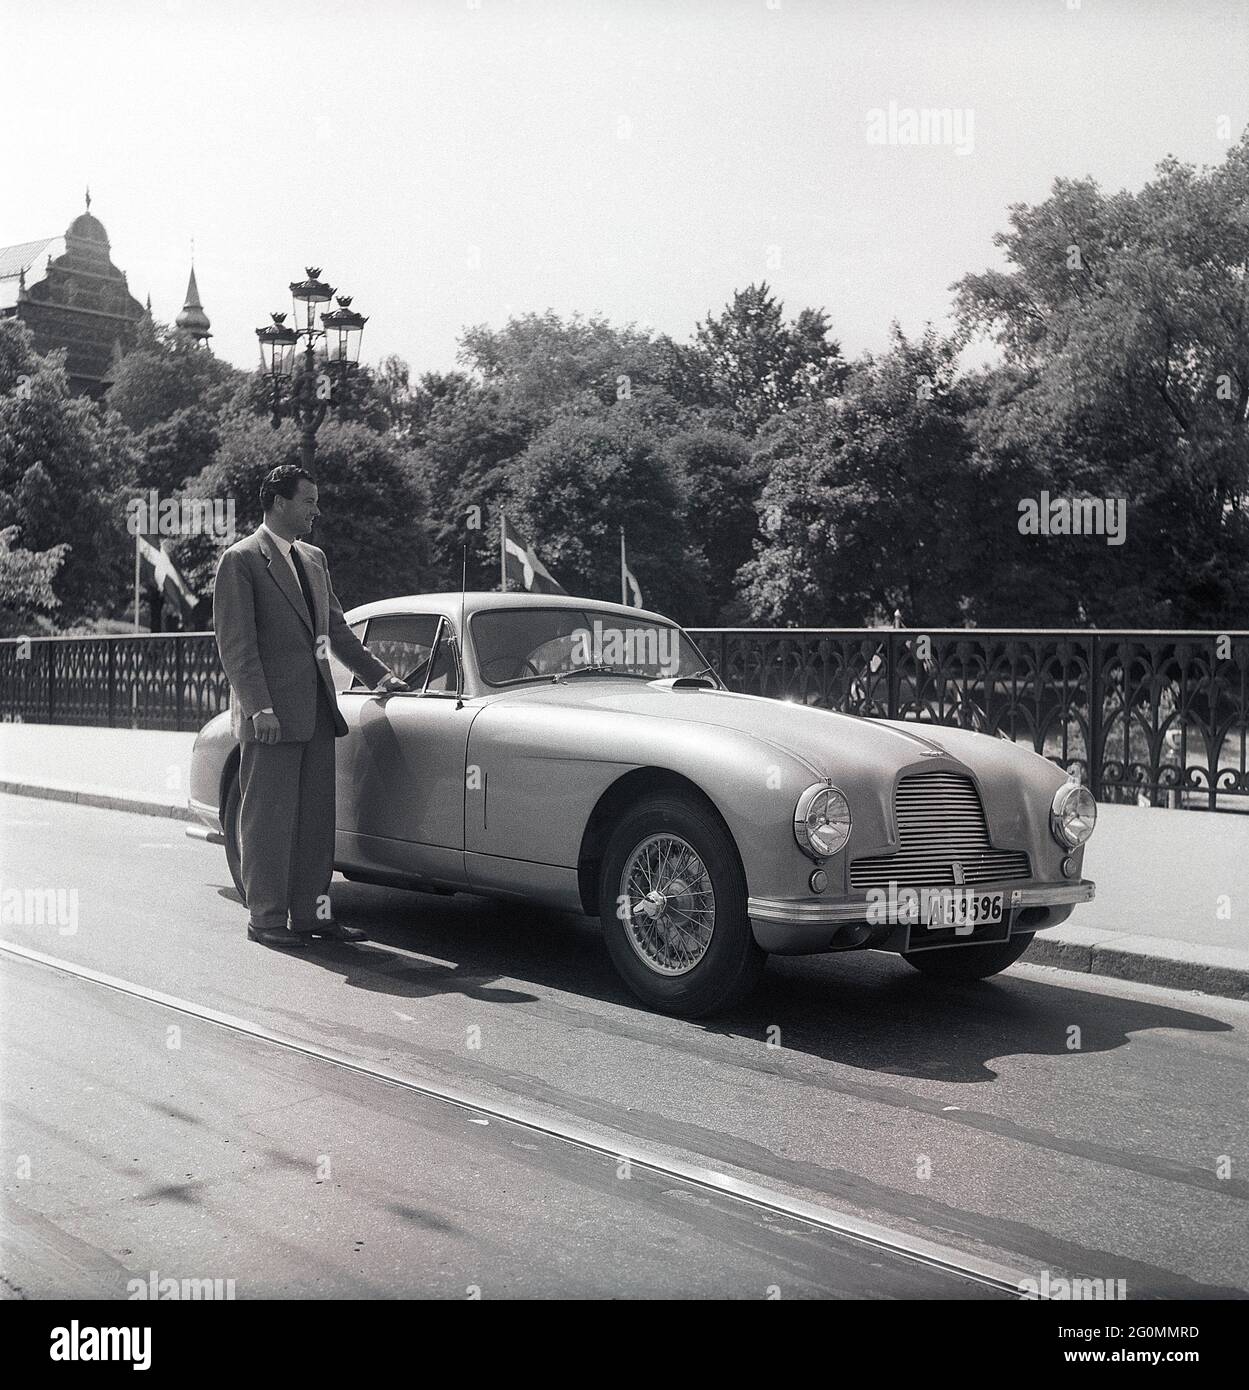 Guida negli anni '50. Un uomo accanto alla sua auto, un Aston Martin DB2. Questo modello è stato presentato nel 1950 ed è stato prodotto in 411 vetture. Aveva un motore a sei cilindri, quattro marce e un chassi progettato da Frank Feeley. Svezia 1953. rif BL108-9 Foto Stock